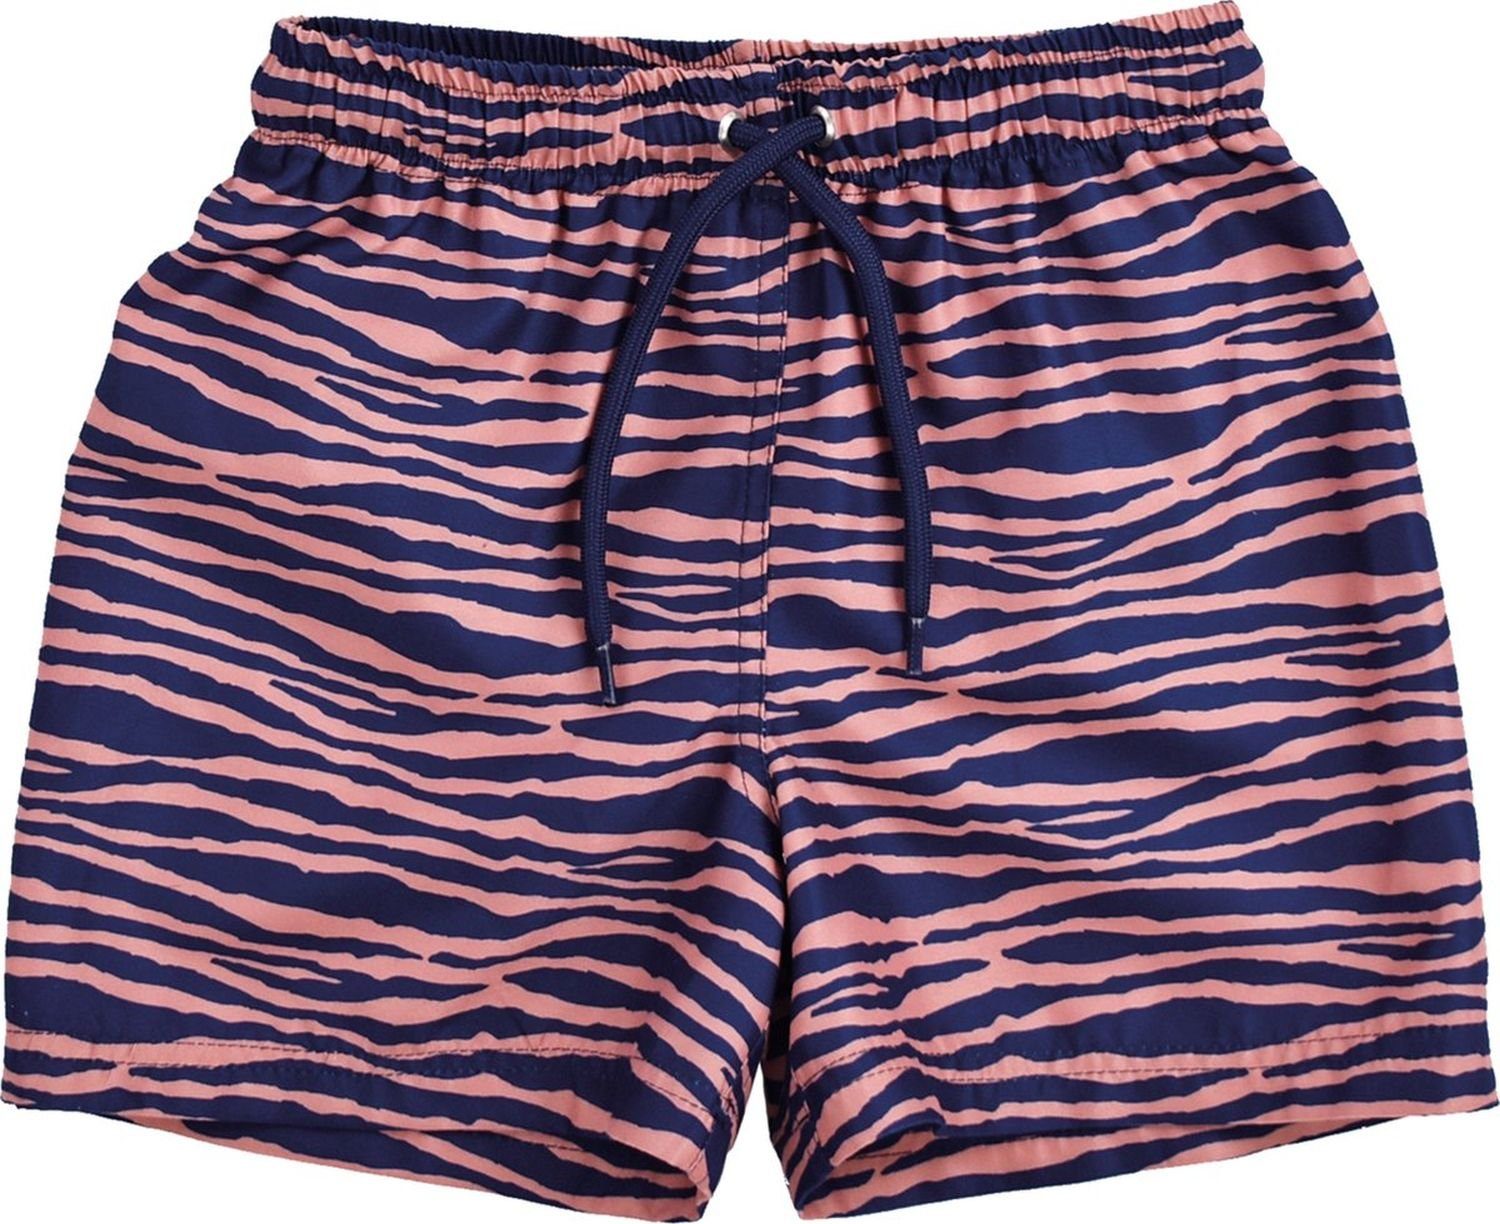 Swim Essentials Badeponcho Swim Essentials UV Schwimmhose, für Jungen blau/orange Zebra Muster, 100% PL